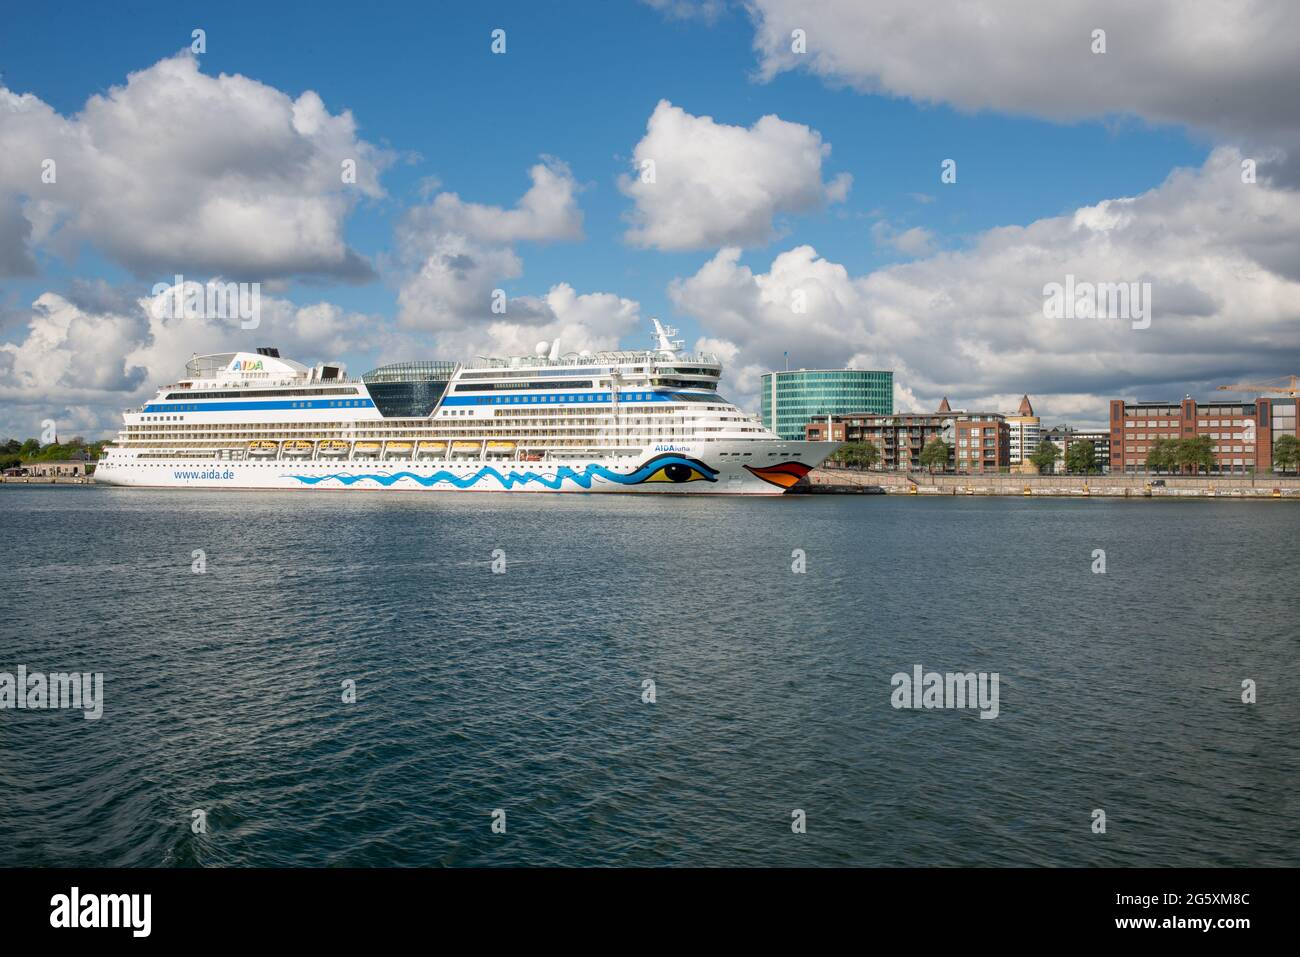 Crucero AIDAluna en el puerto de Copenhague en Dinamarca Foto de stock